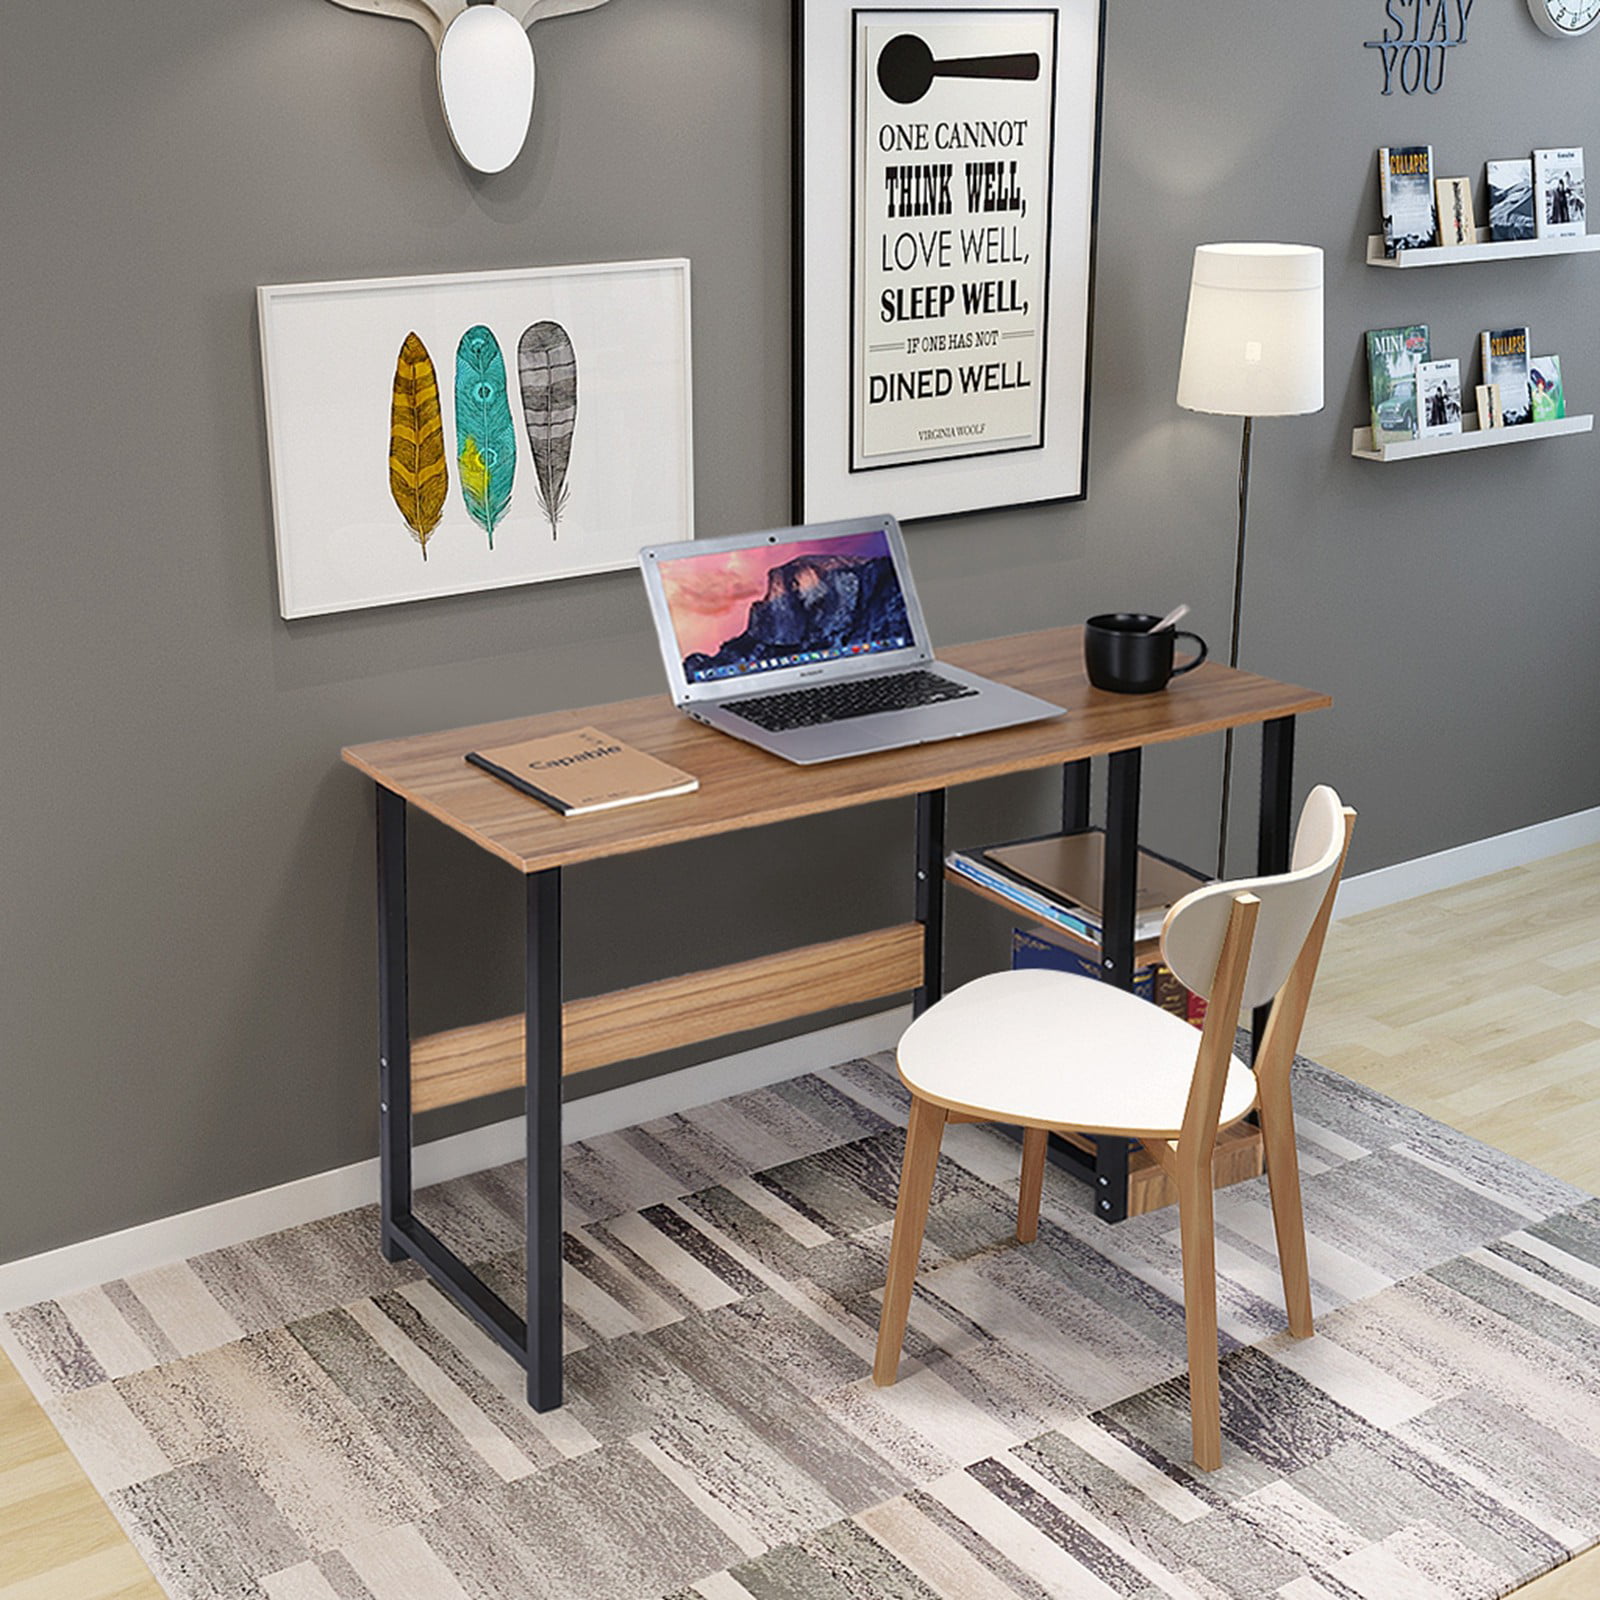 Details about   Home Desktop Computer Desks Bedroom Laptop Study Table Office Desk Workstations 